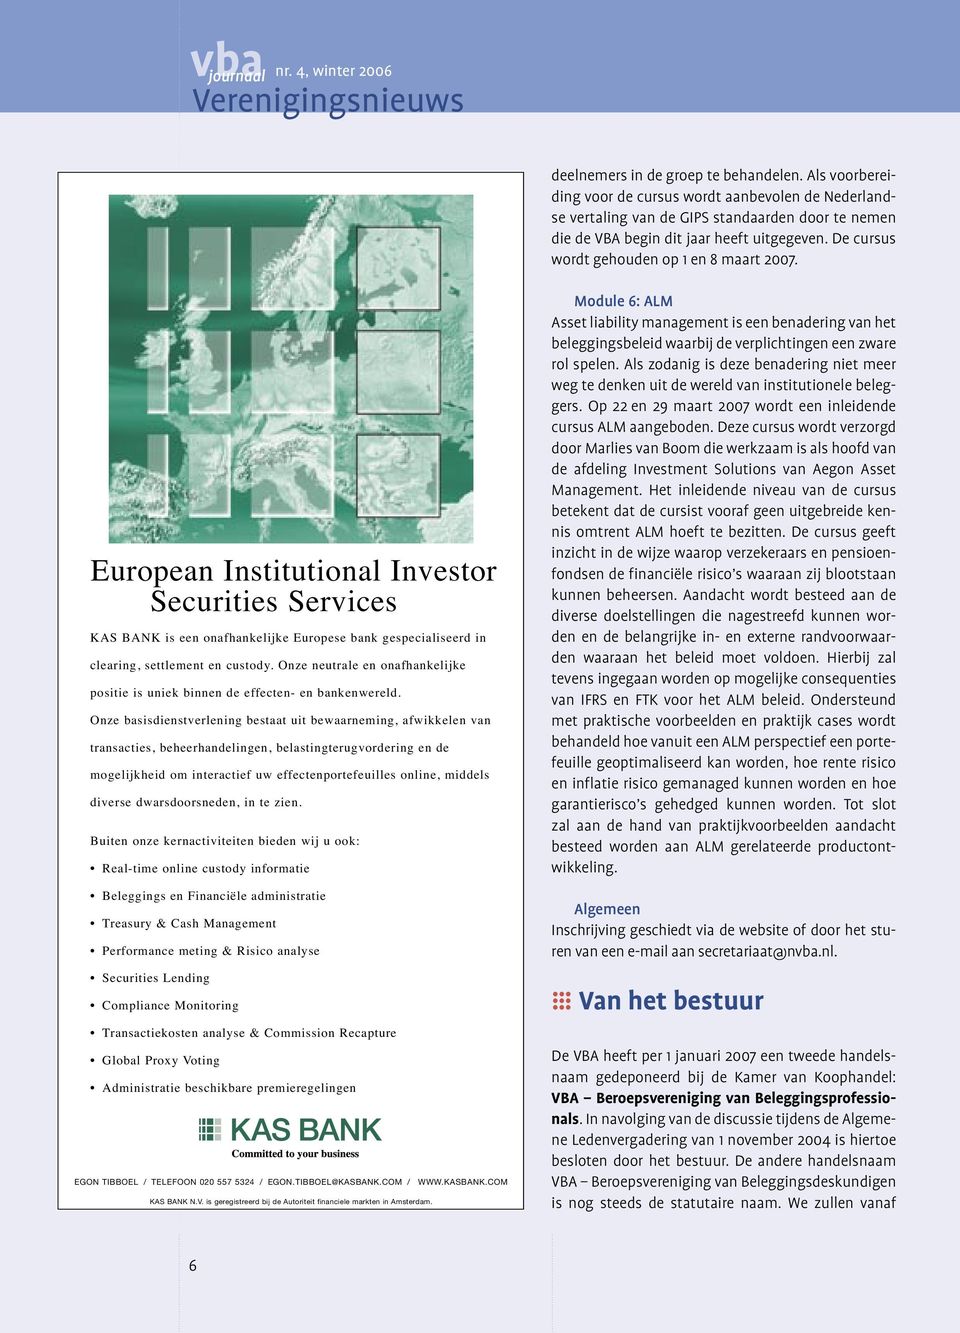 De cursus wordt gehouden op 1 en 8 maart 2007. European Institutional Investor Securities Services KAS BANK is een onafhankelijke Europese bank gespecialiseerd in clearing, settlement en custody.